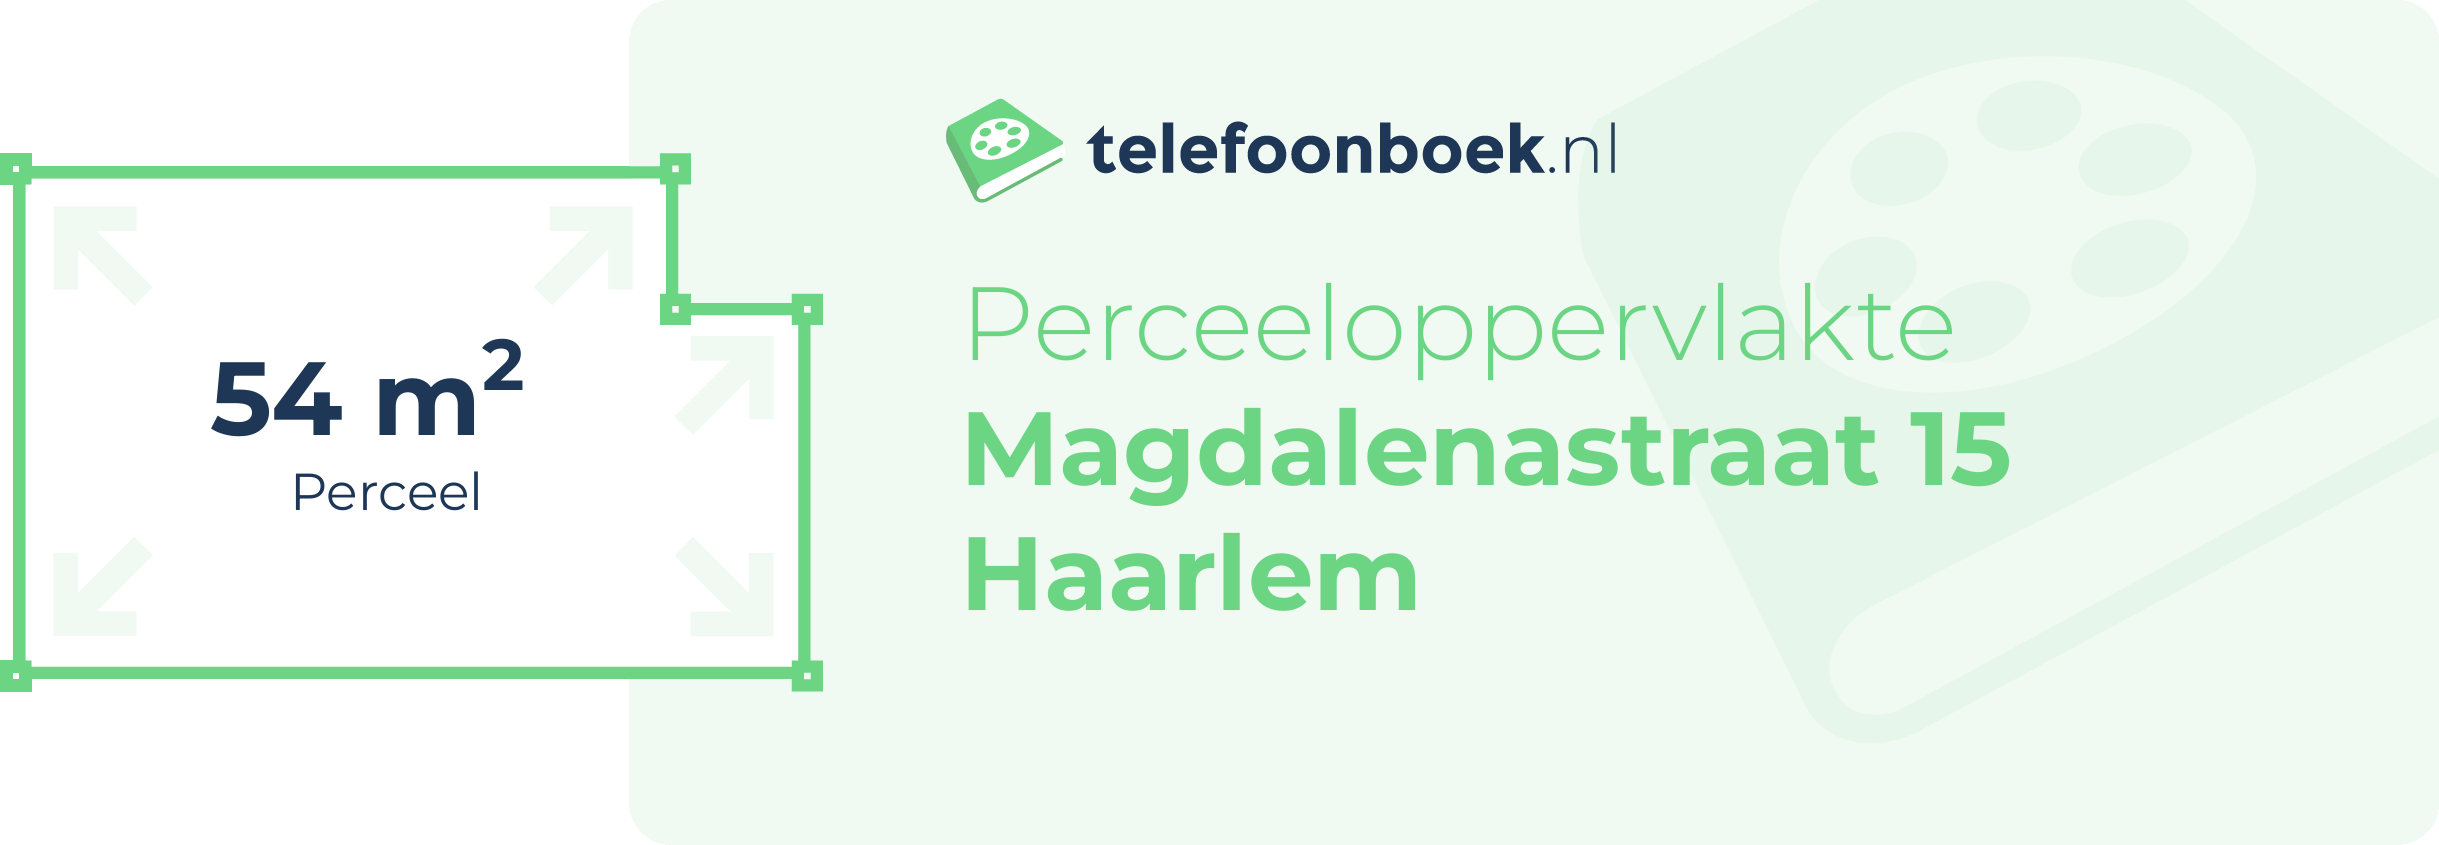 Perceeloppervlakte Magdalenastraat 15 Haarlem